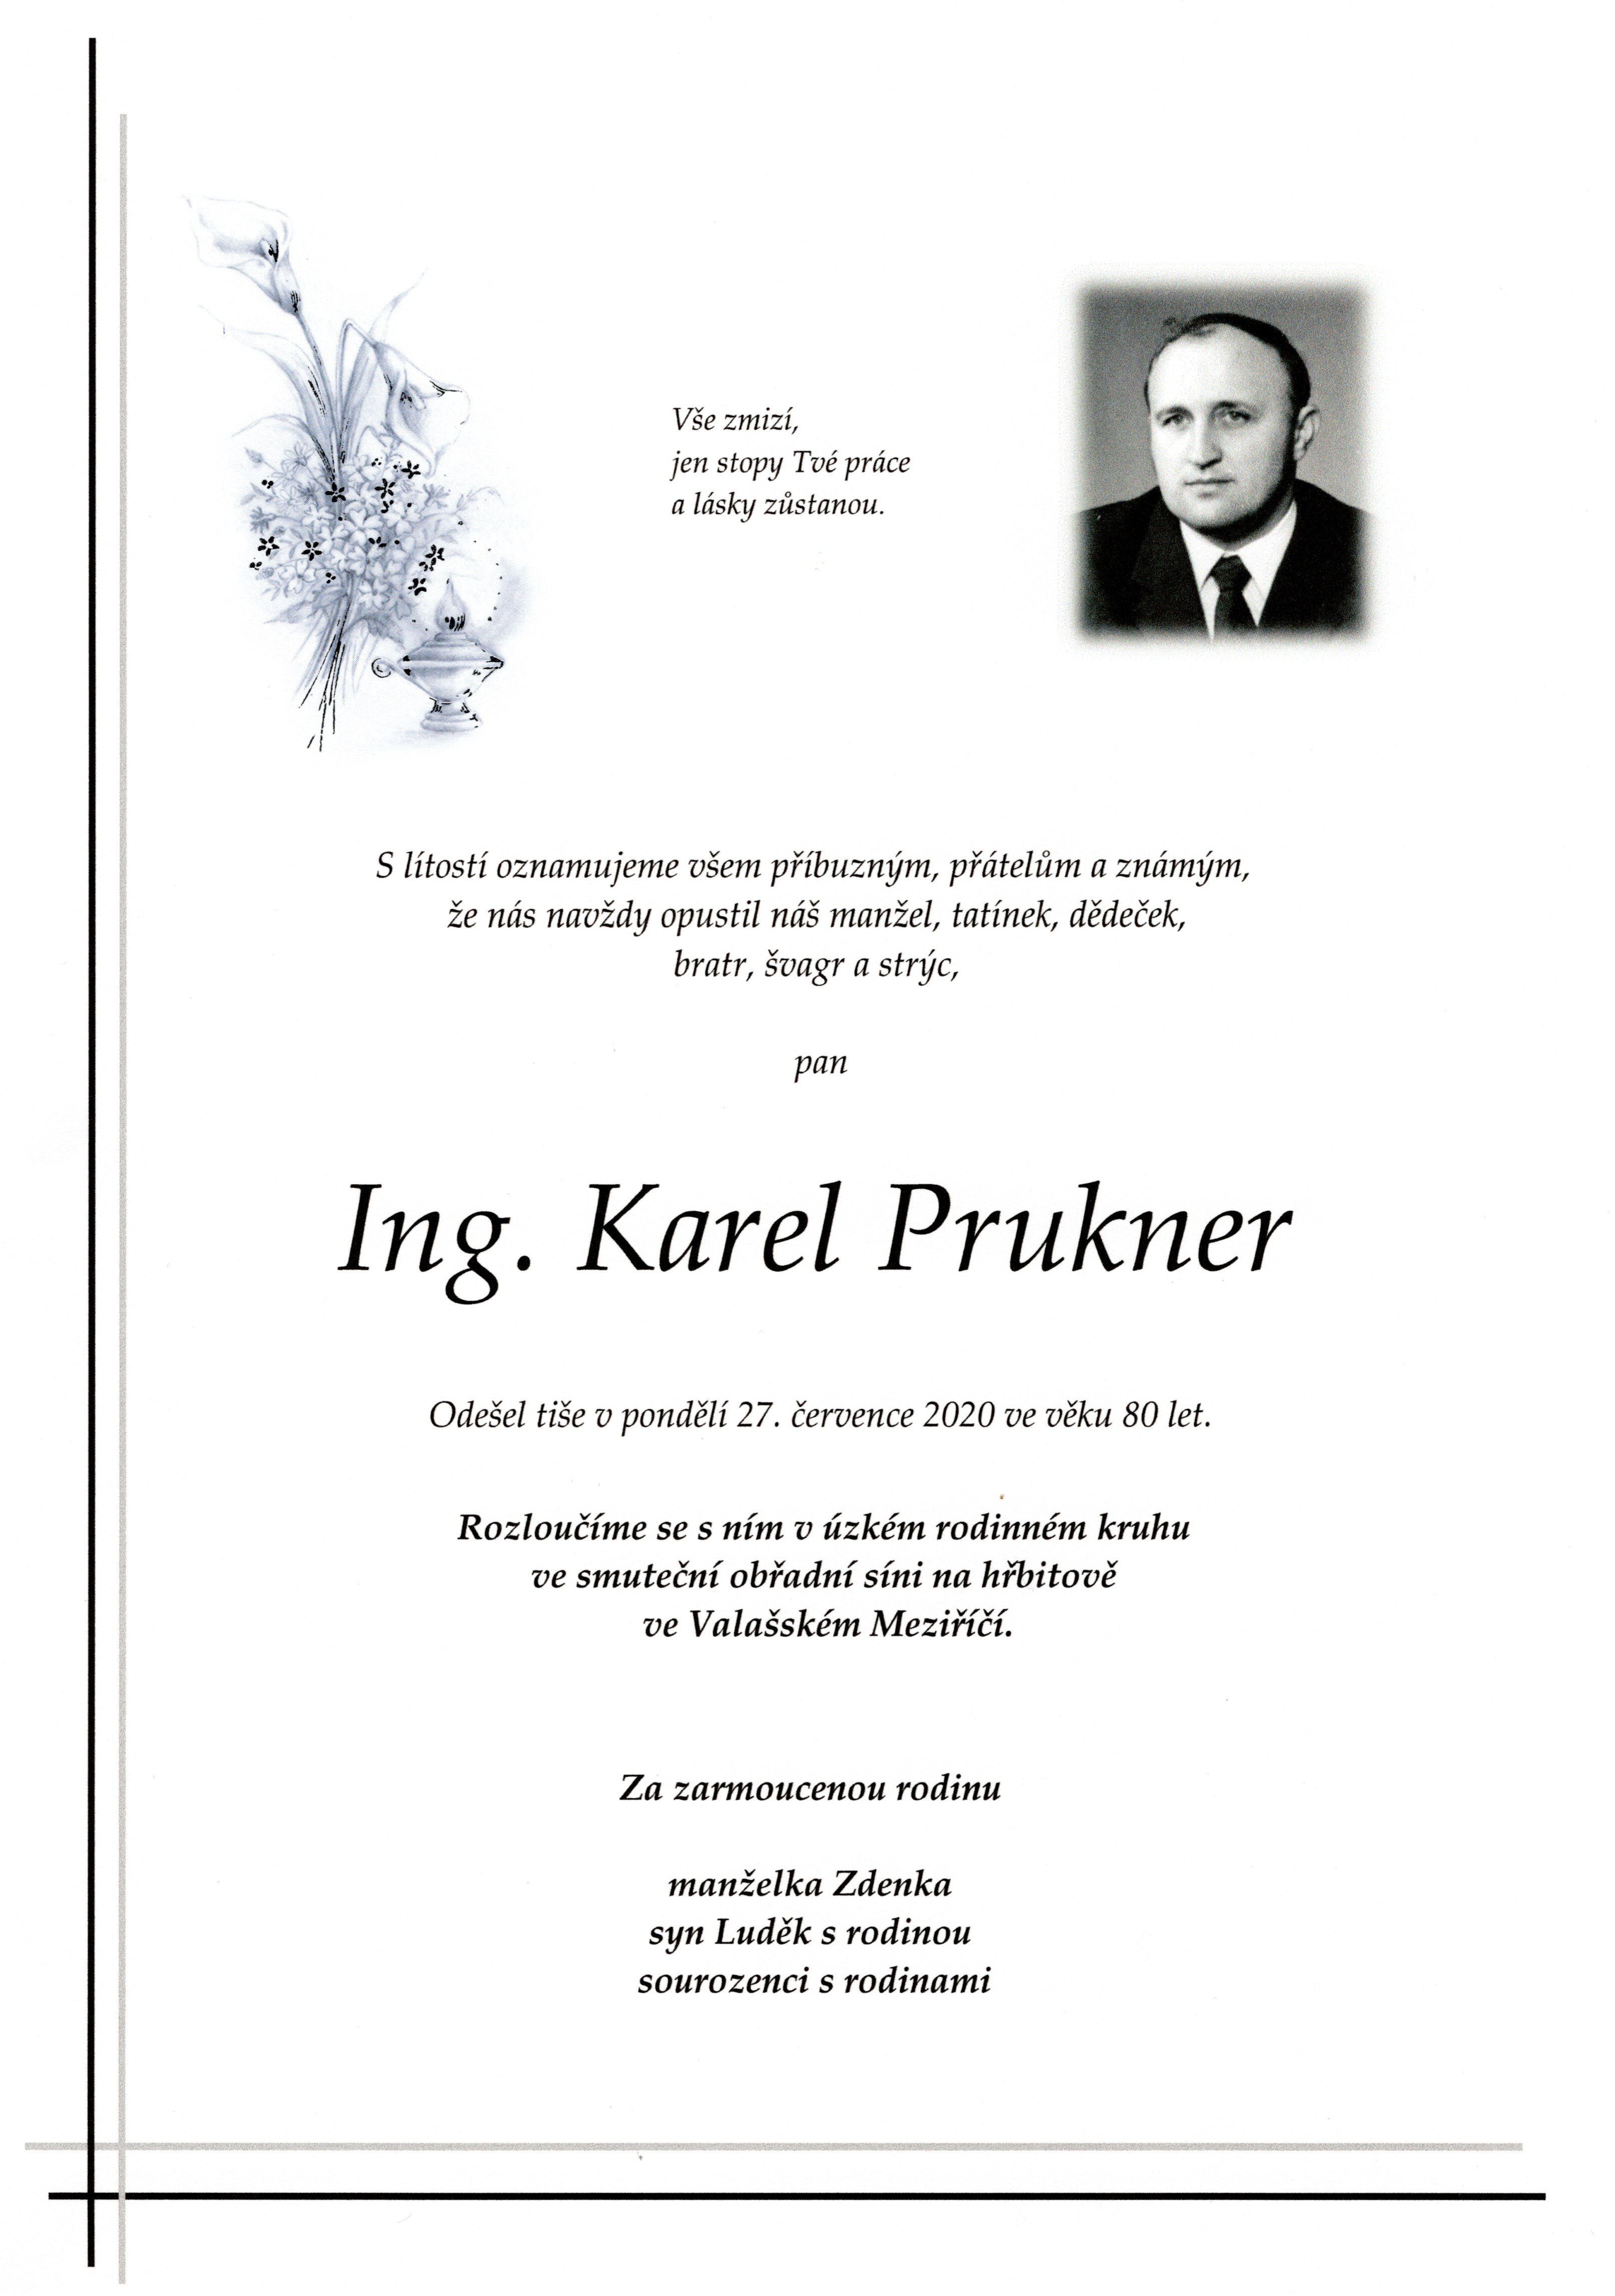 Ing. Karel Prukner